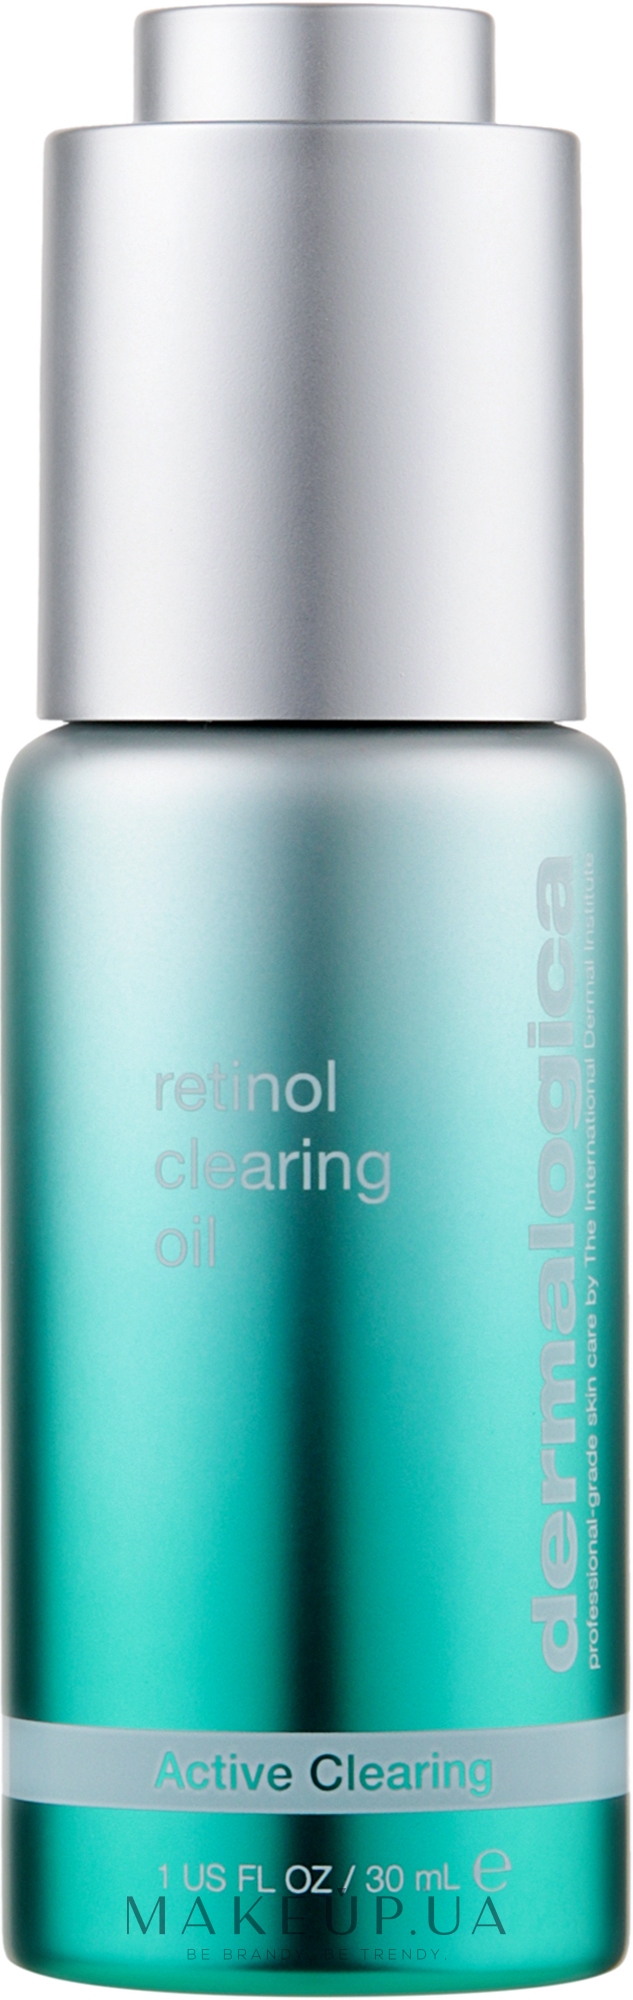 Активна очищувальна олія з ретинолом - Dermalogica Retinol Clearing Oil — фото 30ml